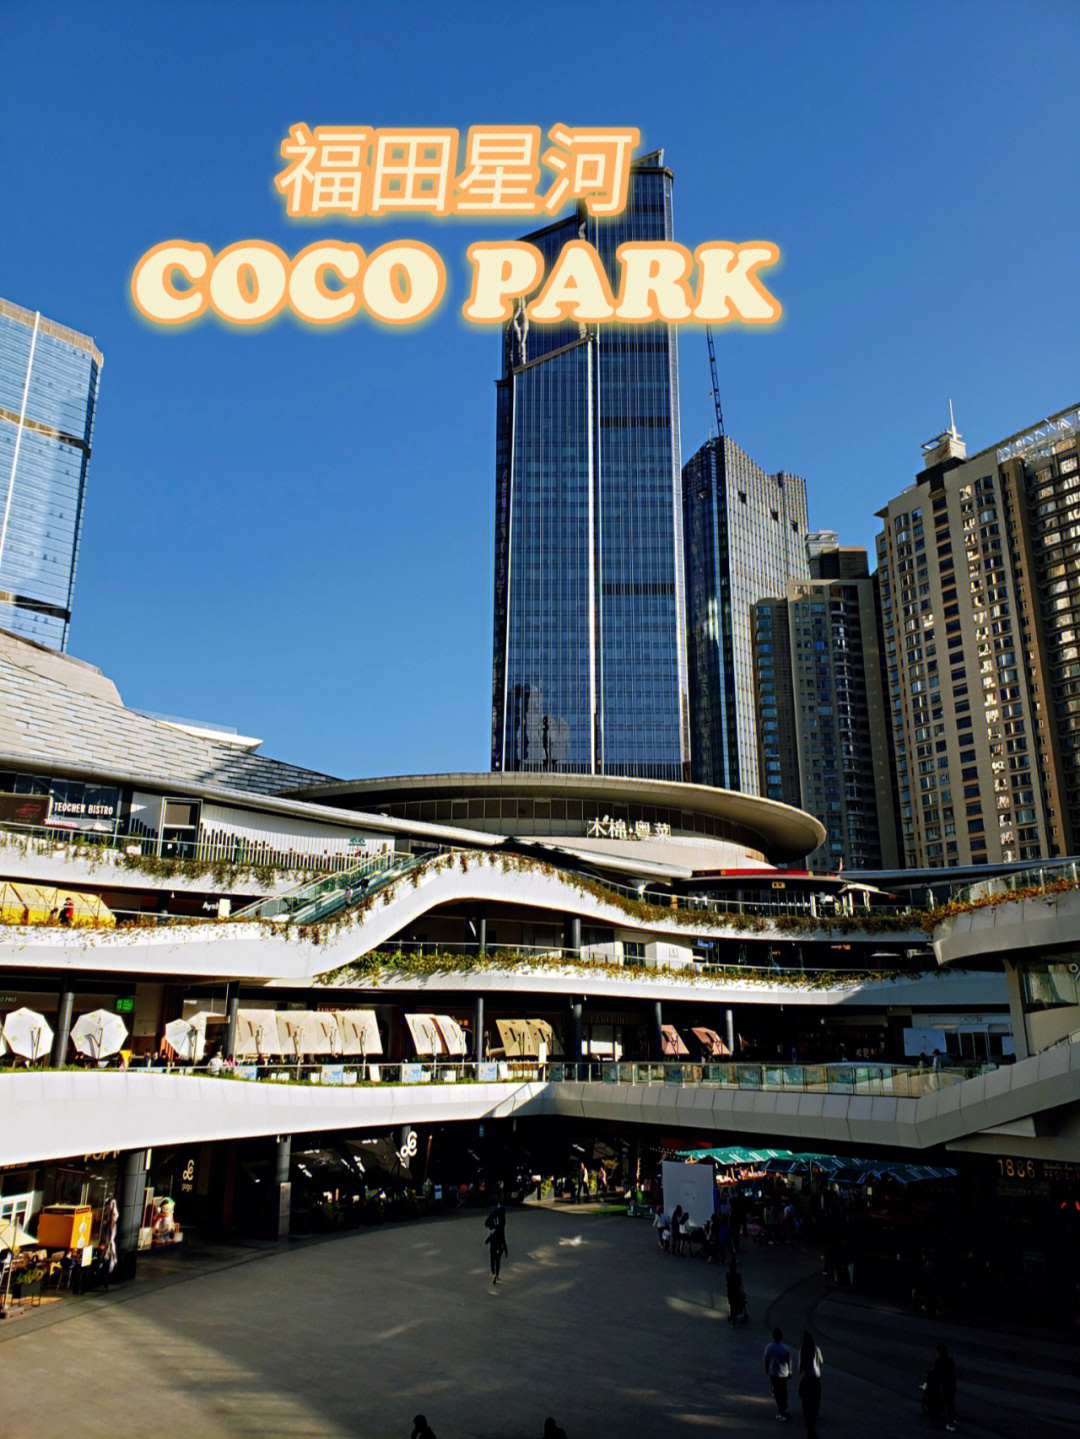 作为一个老牌的商场福田星河coco park位于深圳福田cbd地带94周围